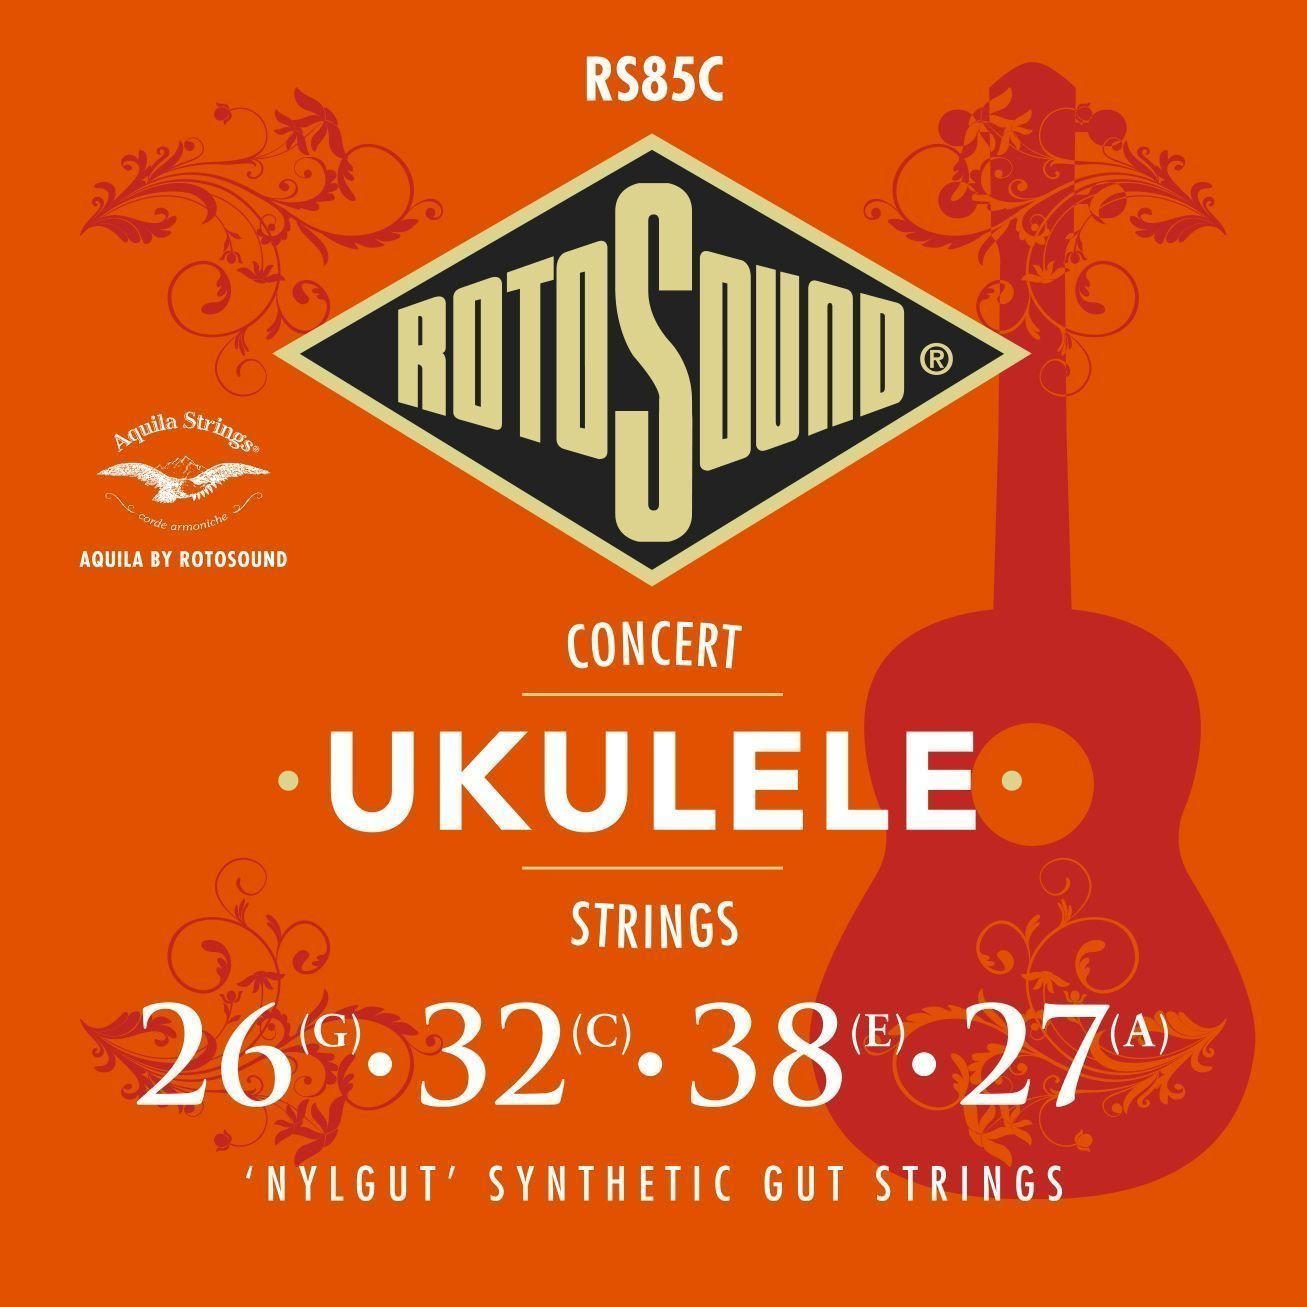 Struny pro koncertní ukulele Rotosound RS85C